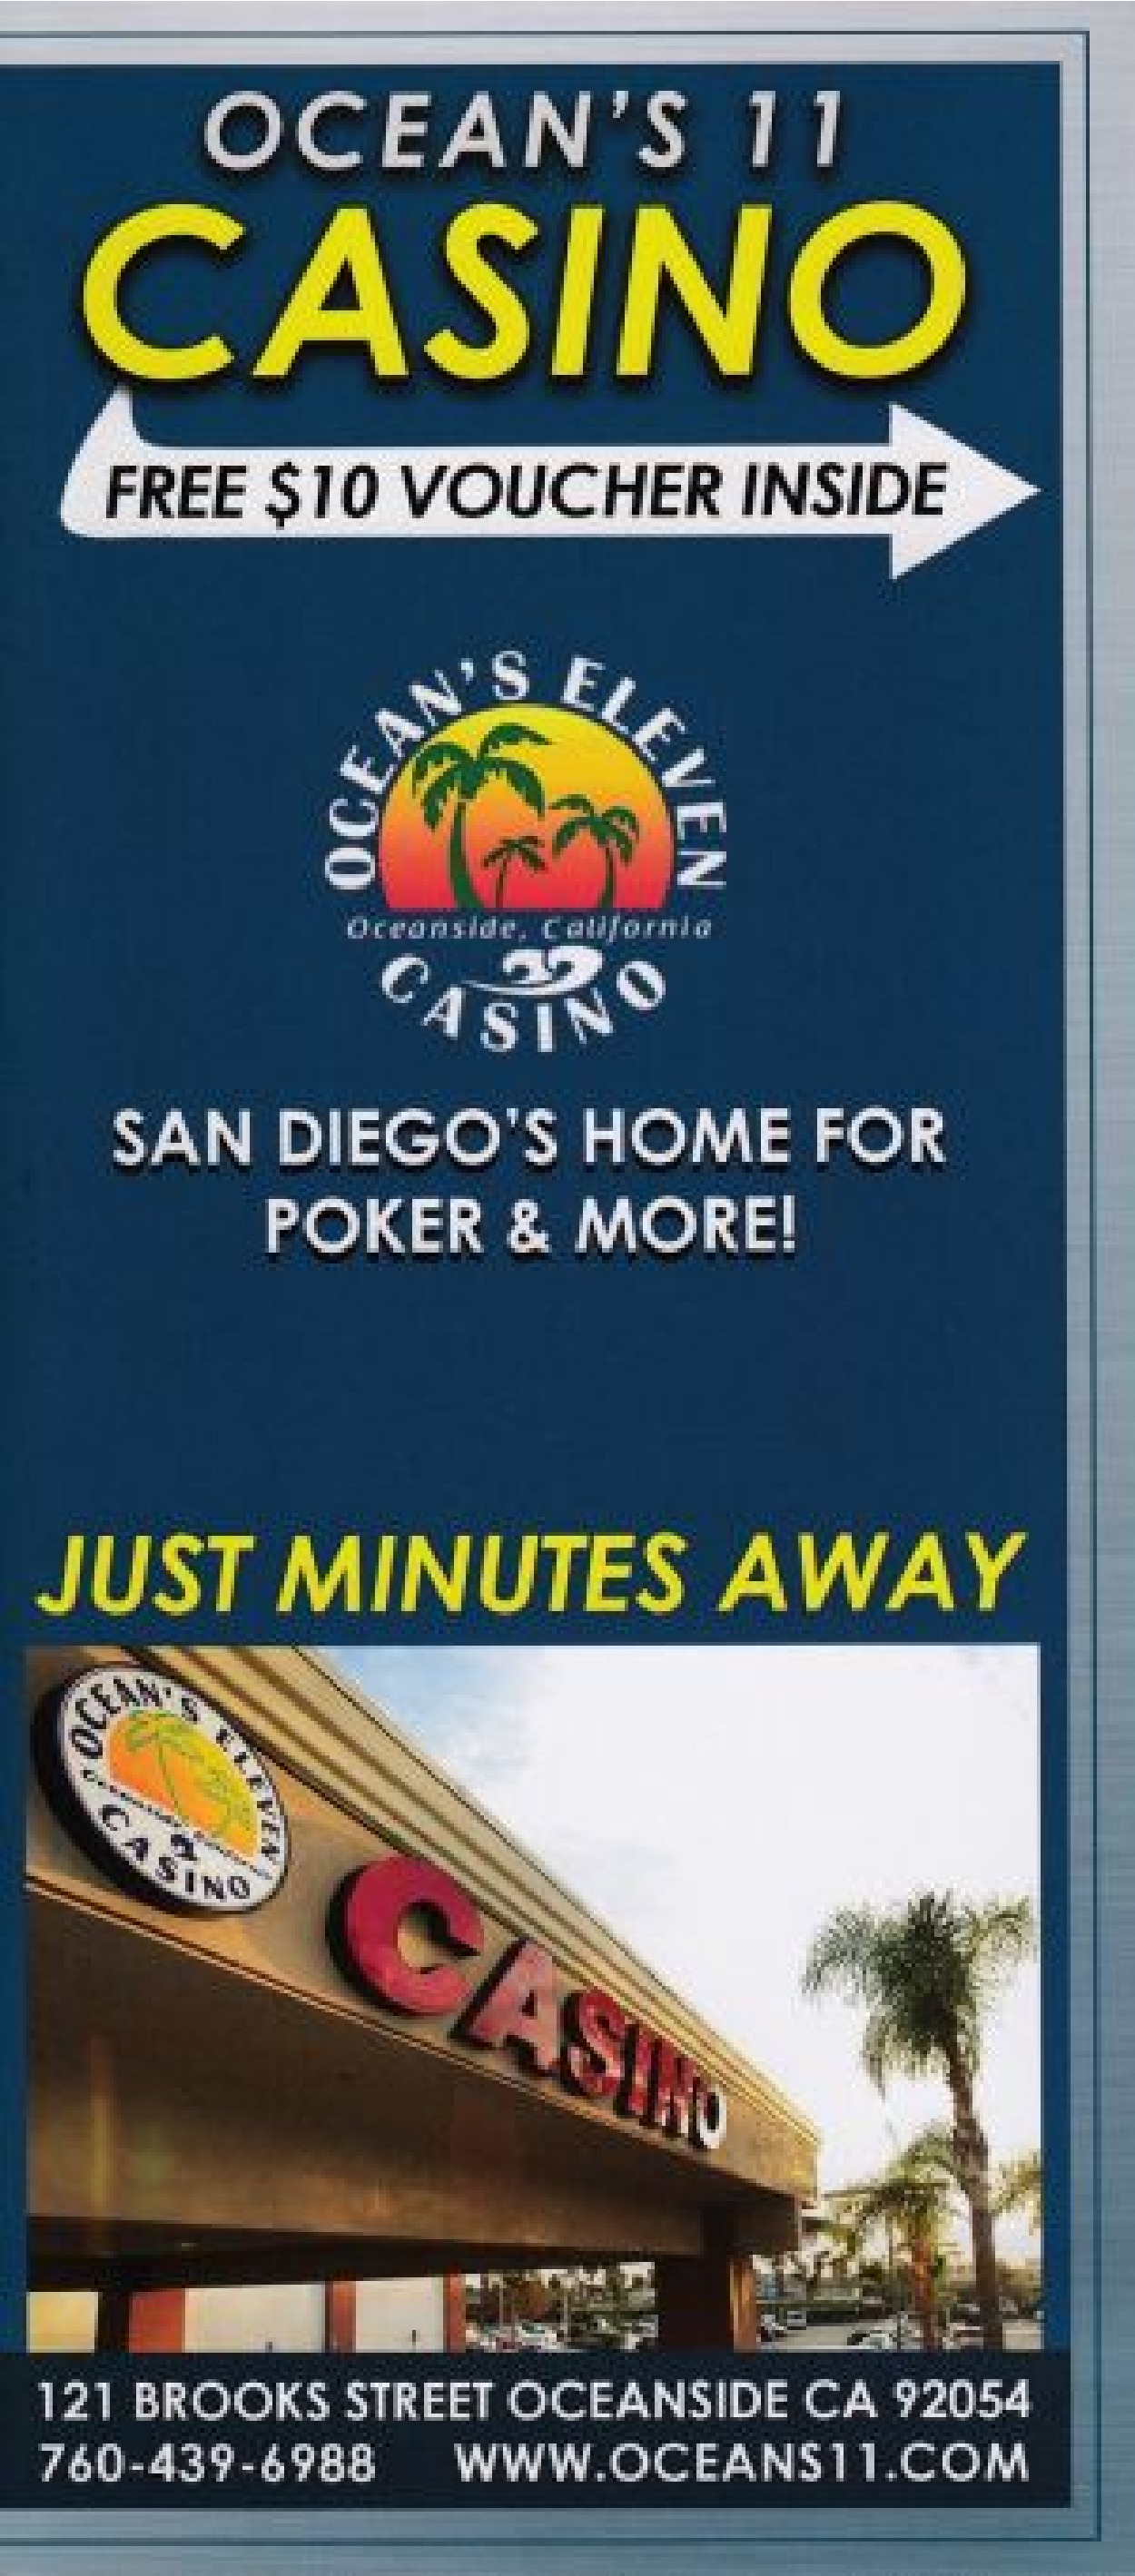 ocean resort casino aaa discount